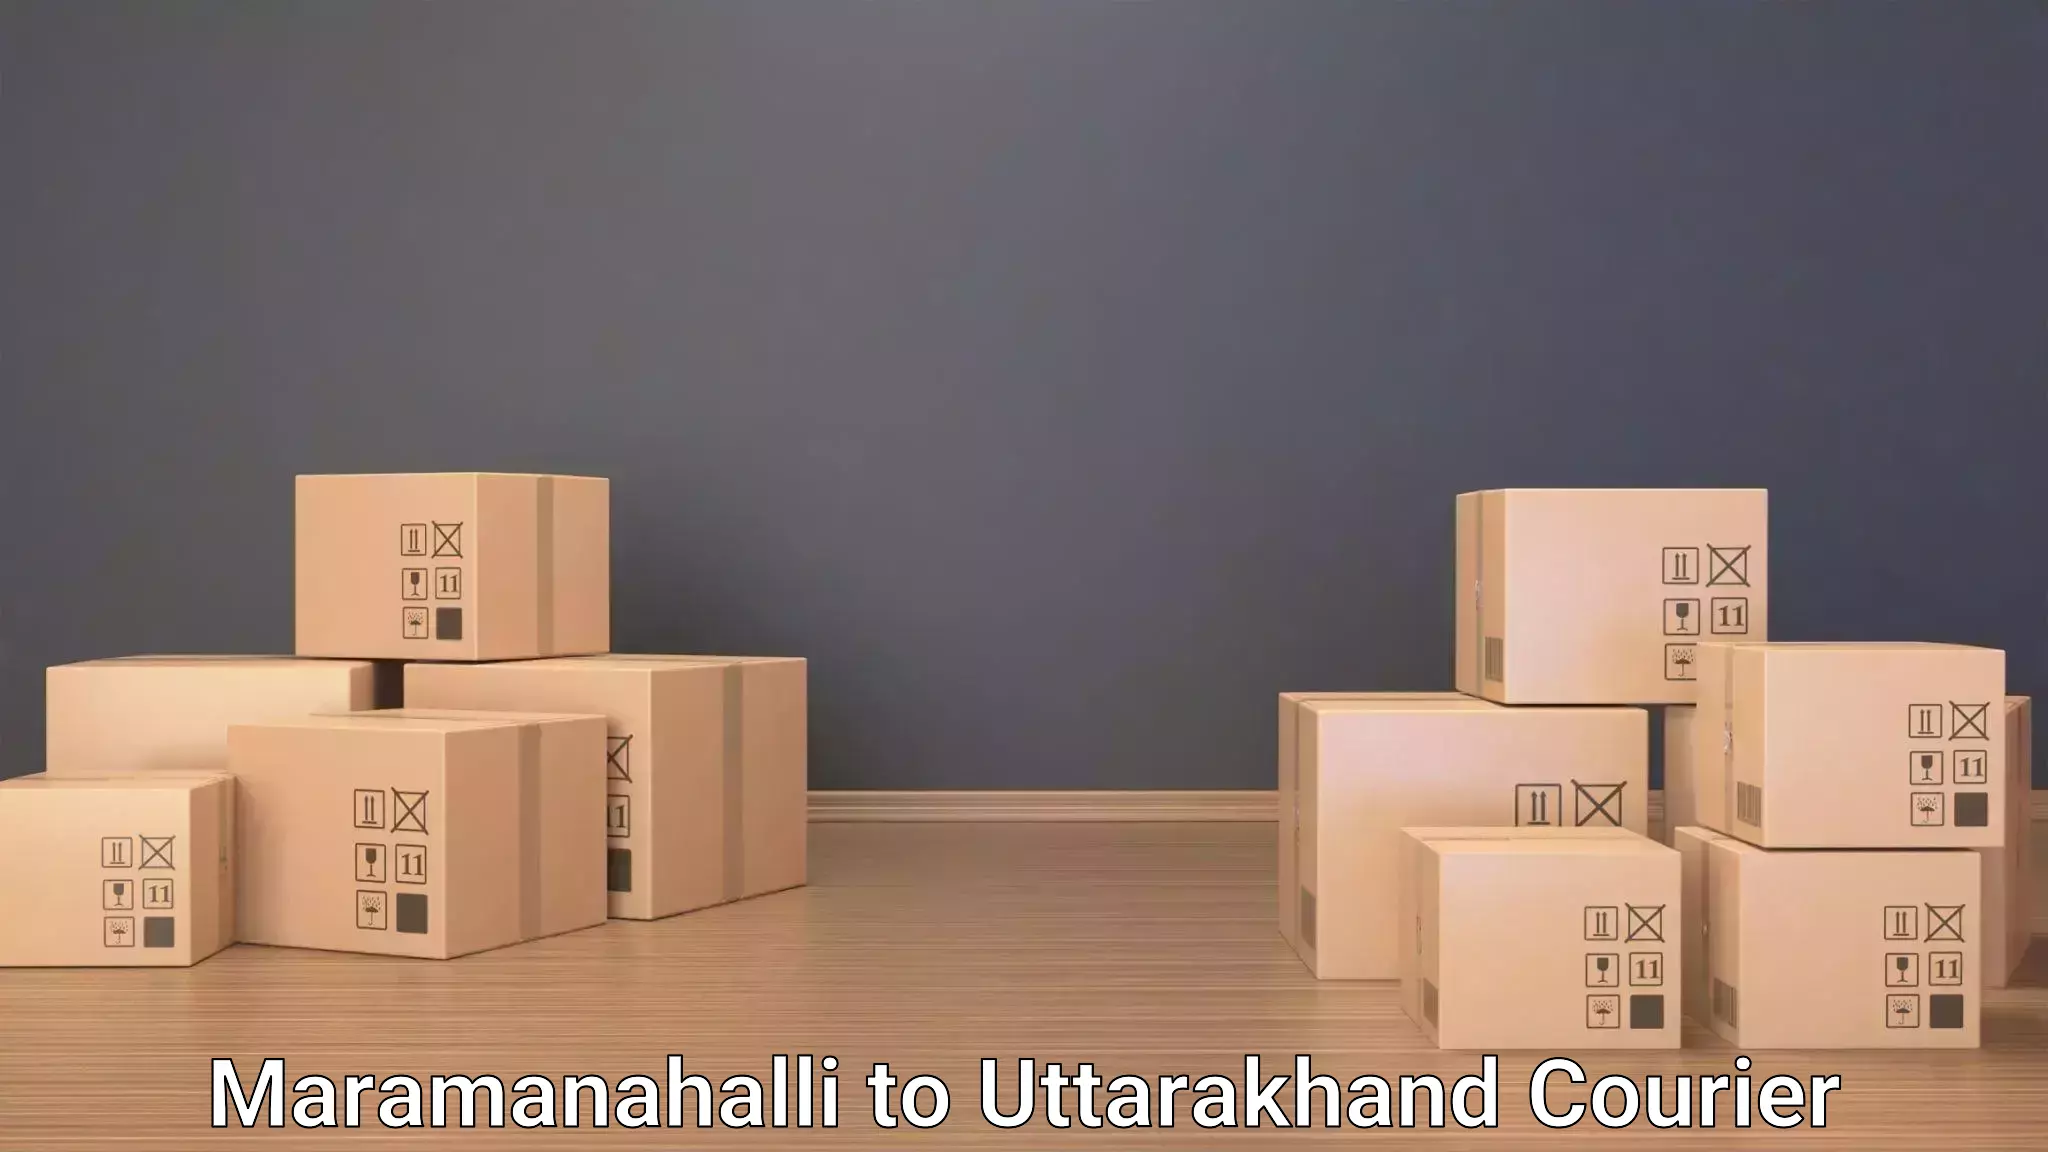 Luggage transport logistics Maramanahalli to Someshwar